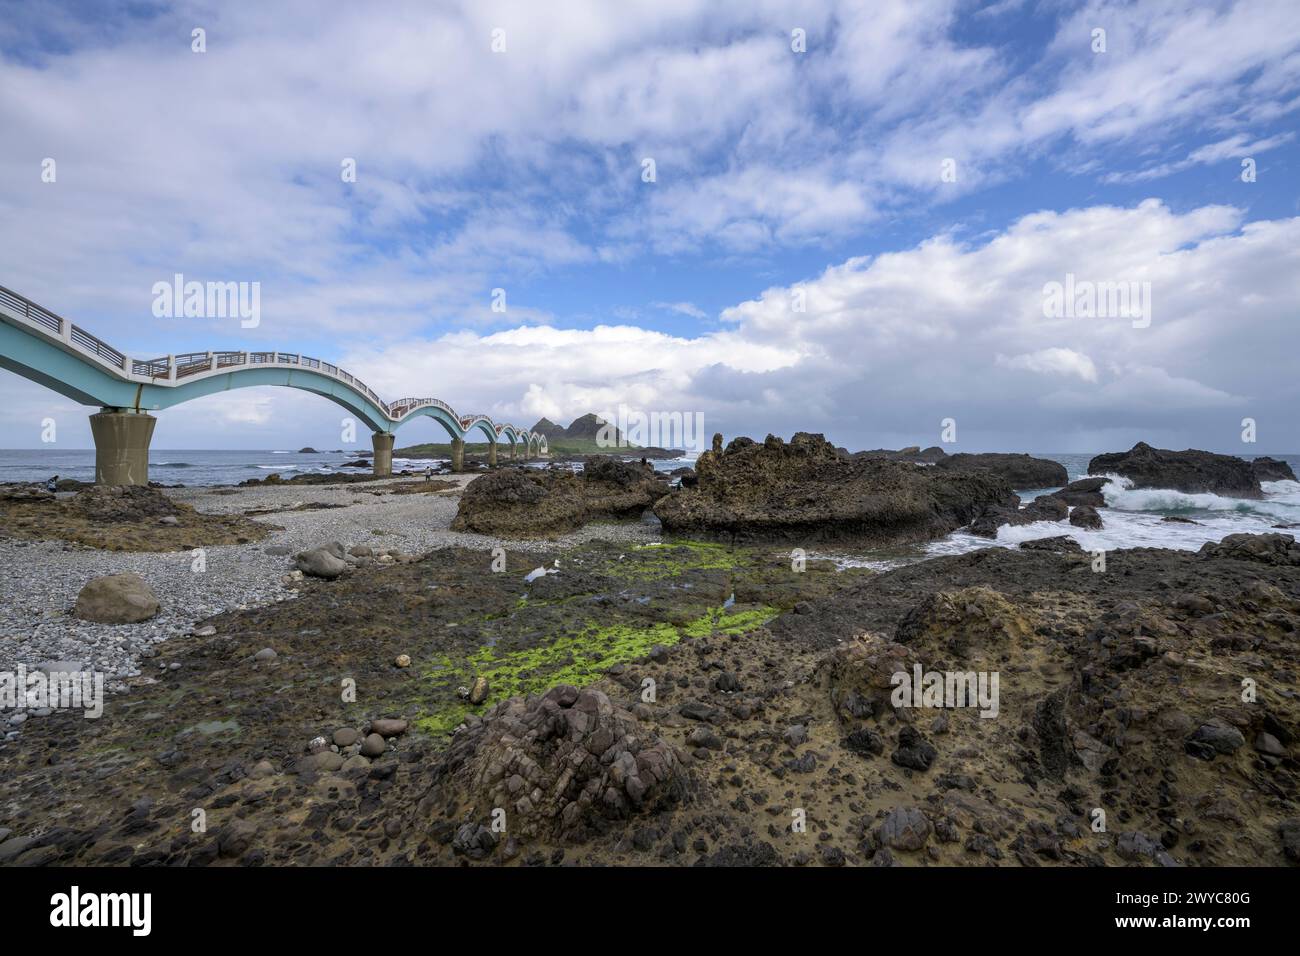 Uno splendido ponte dell'Arco di Sanxiantai si estende su una scena costiera rocciosa con onde e un cielo blu stratificato di nuvole Foto Stock